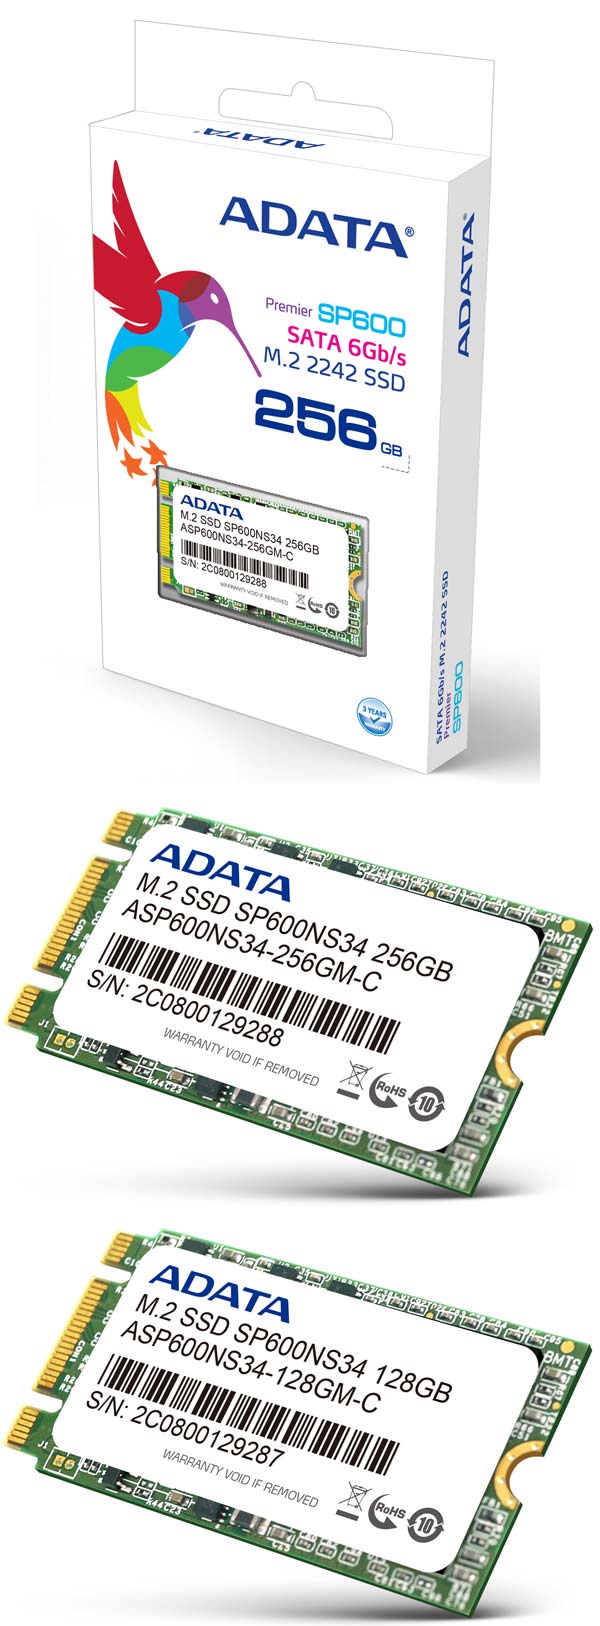 На фото показаны накопители ADATA SP600NS34 M.2 SSD